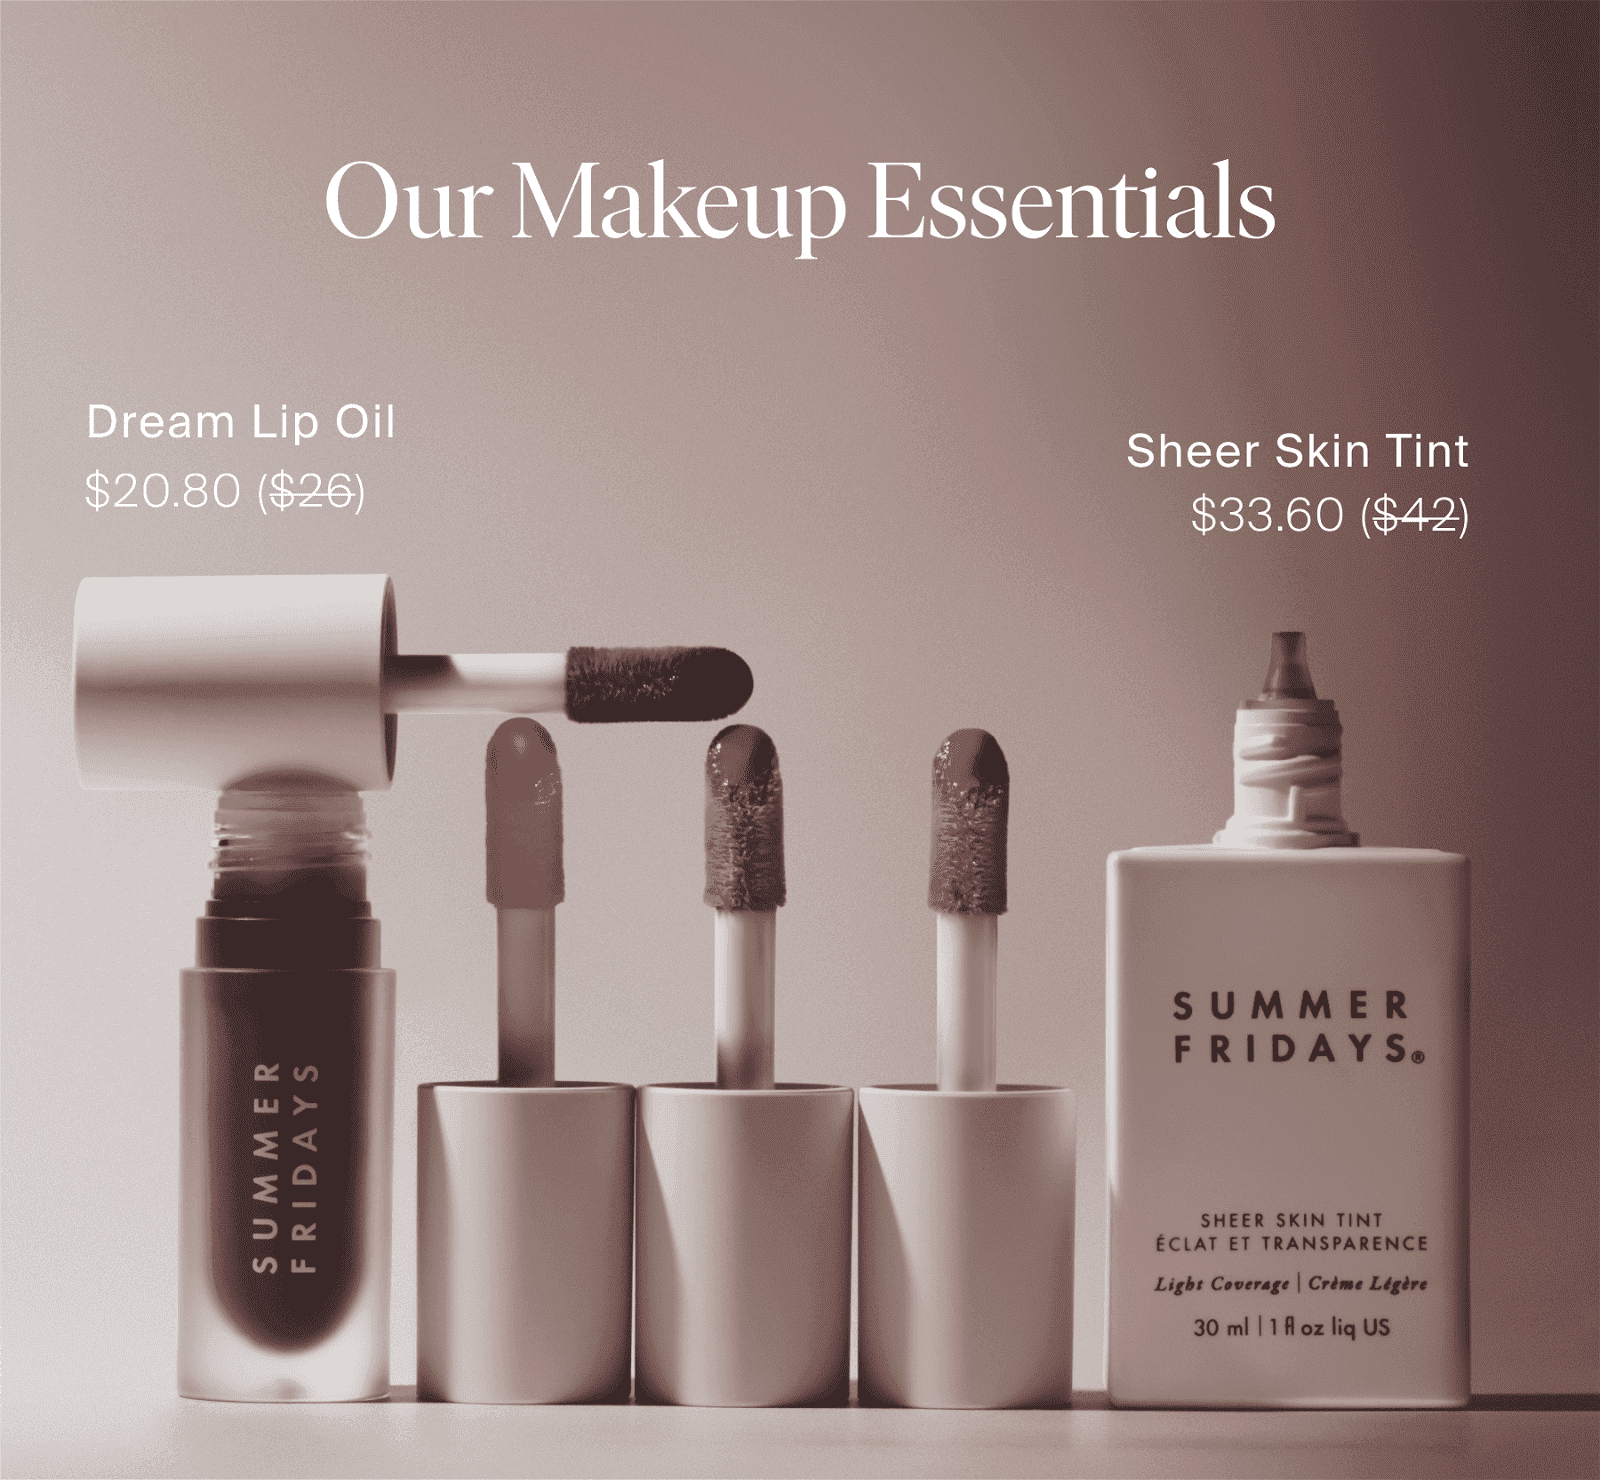 Our Makeup Essentials